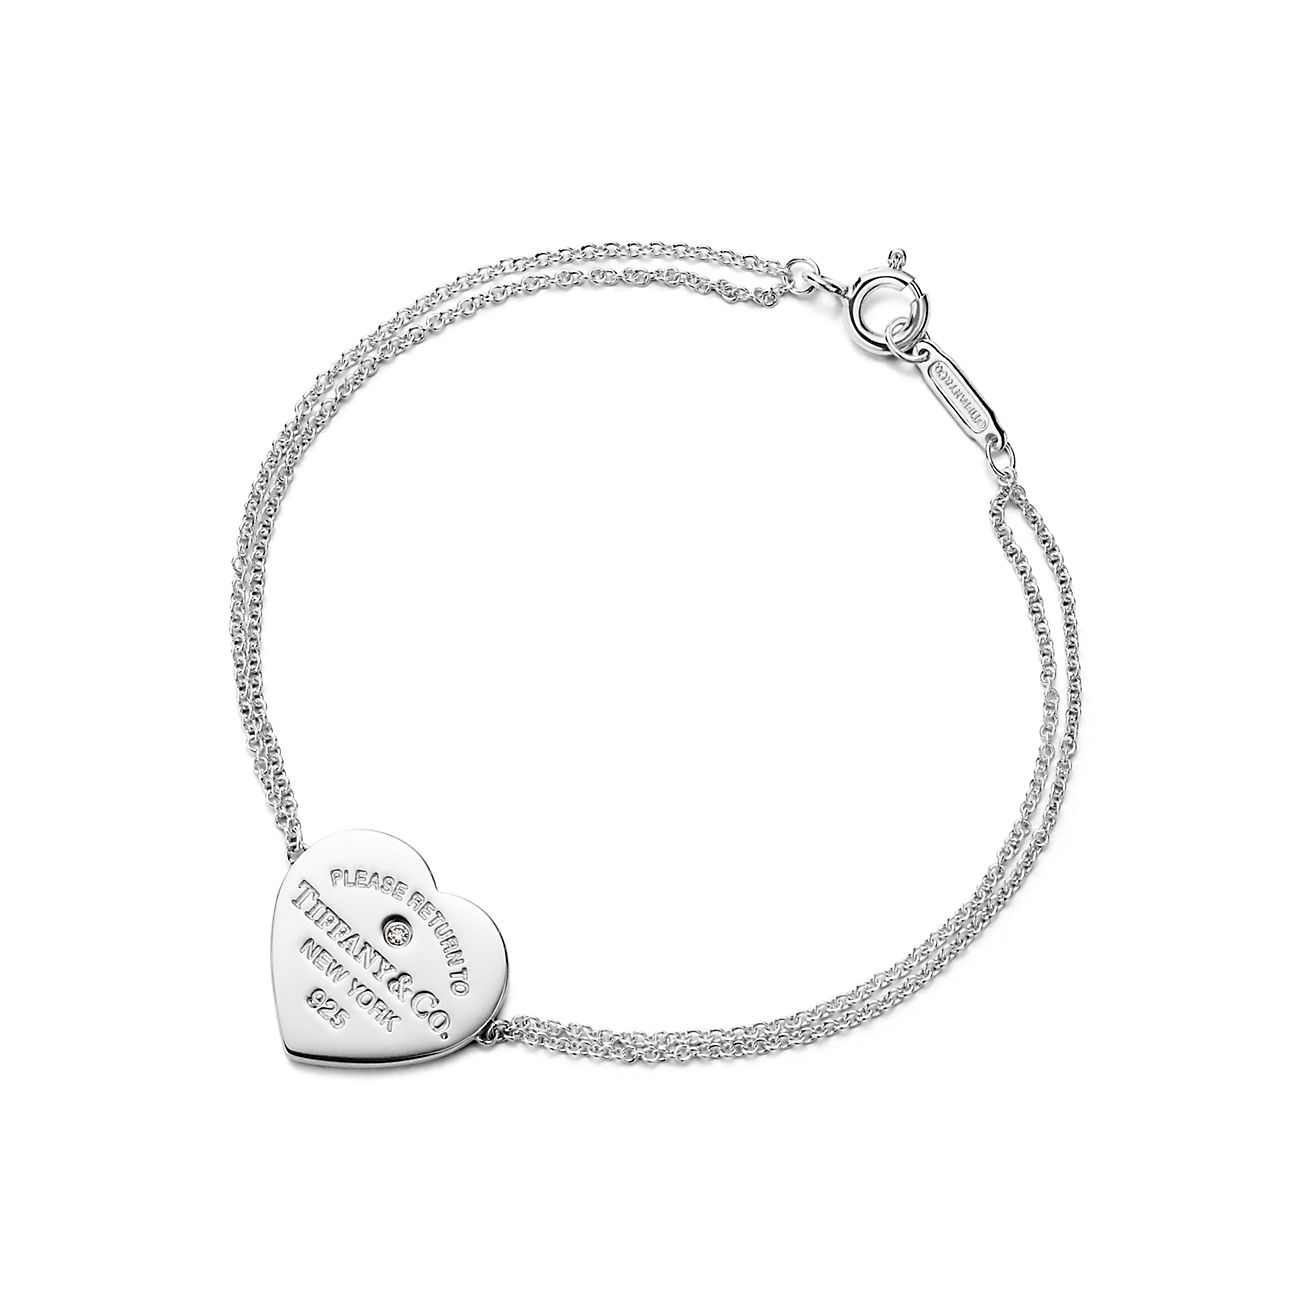 Tiffany & Co. - Please Return To Tiffany & Co Heart Tag Bracelet 7